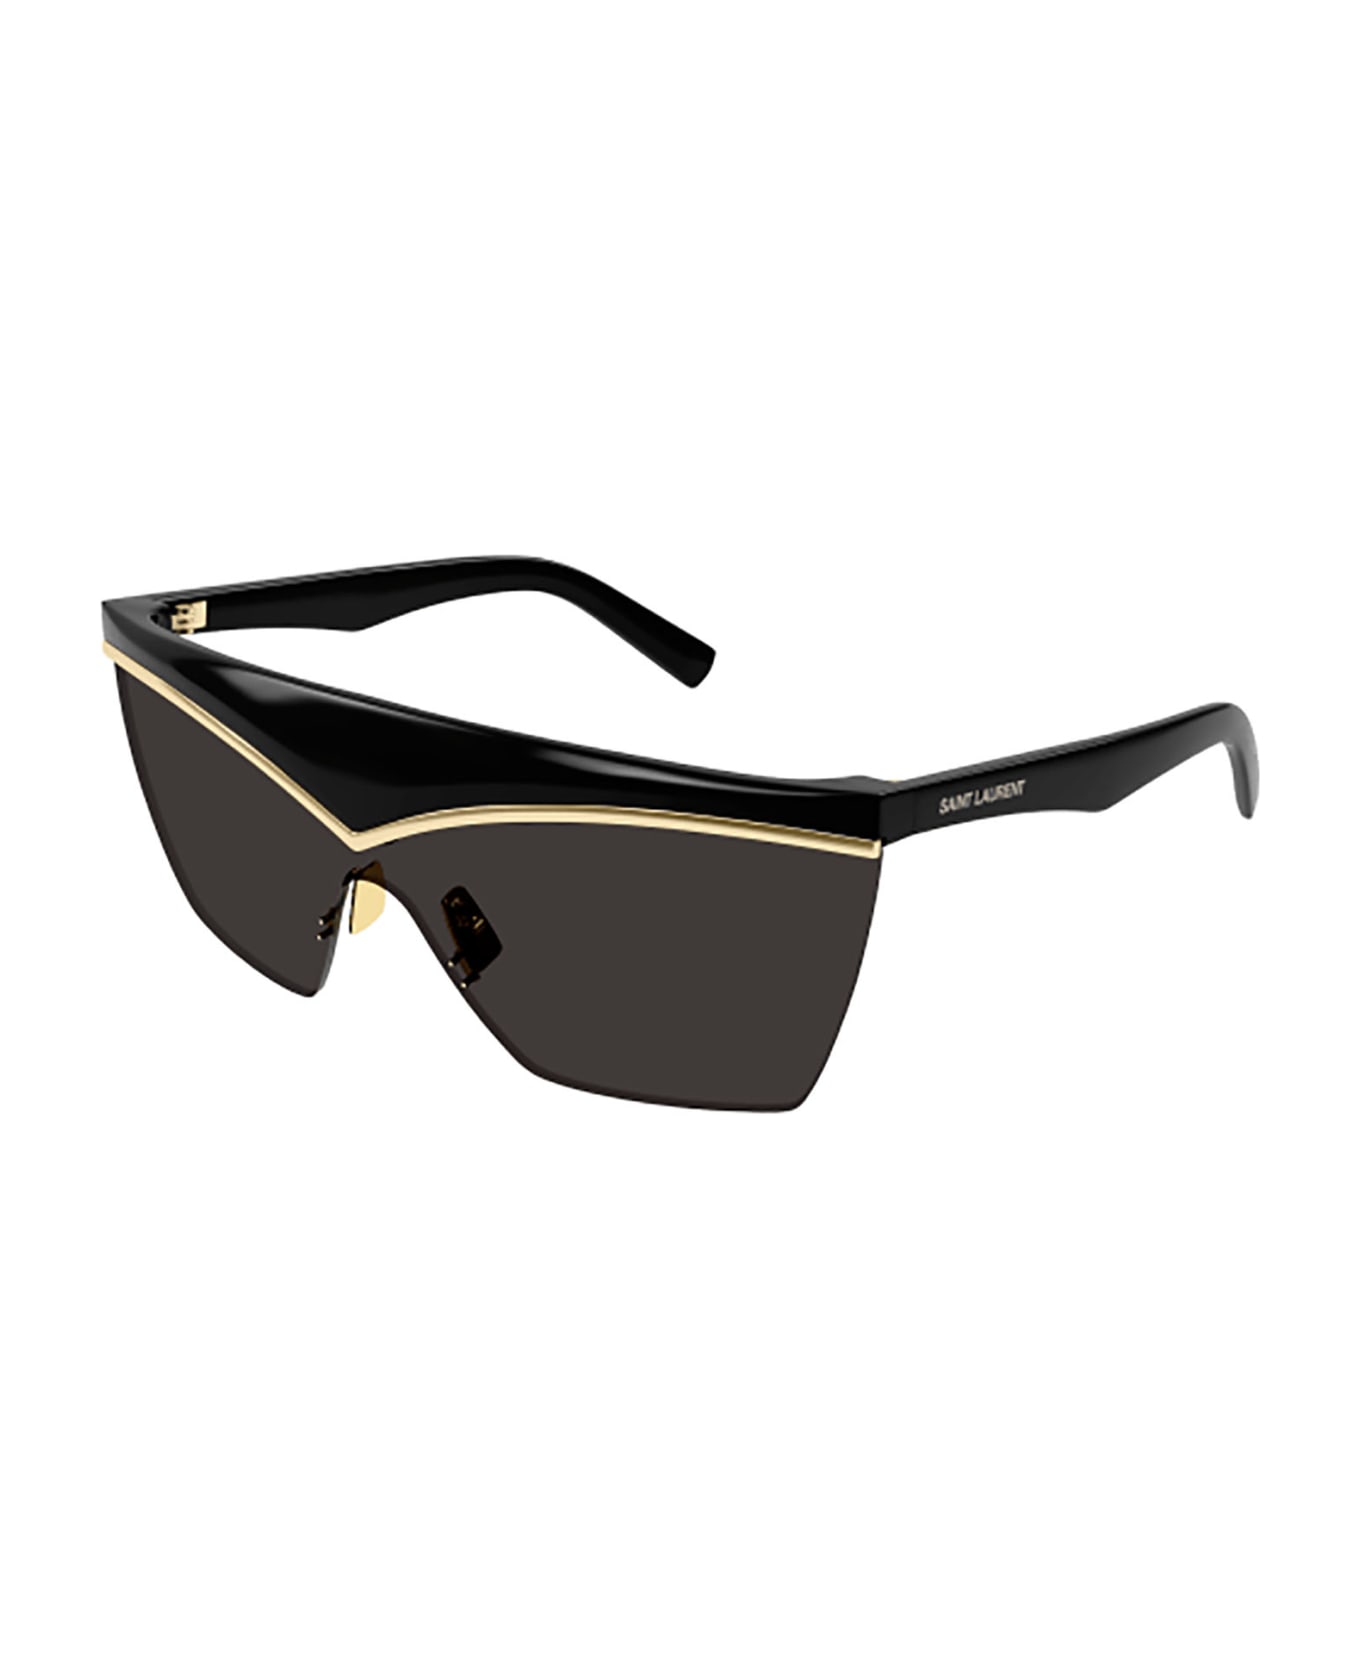 Saint Laurent Eyewear SL 614 MASK Sunglasses - Black Black Black